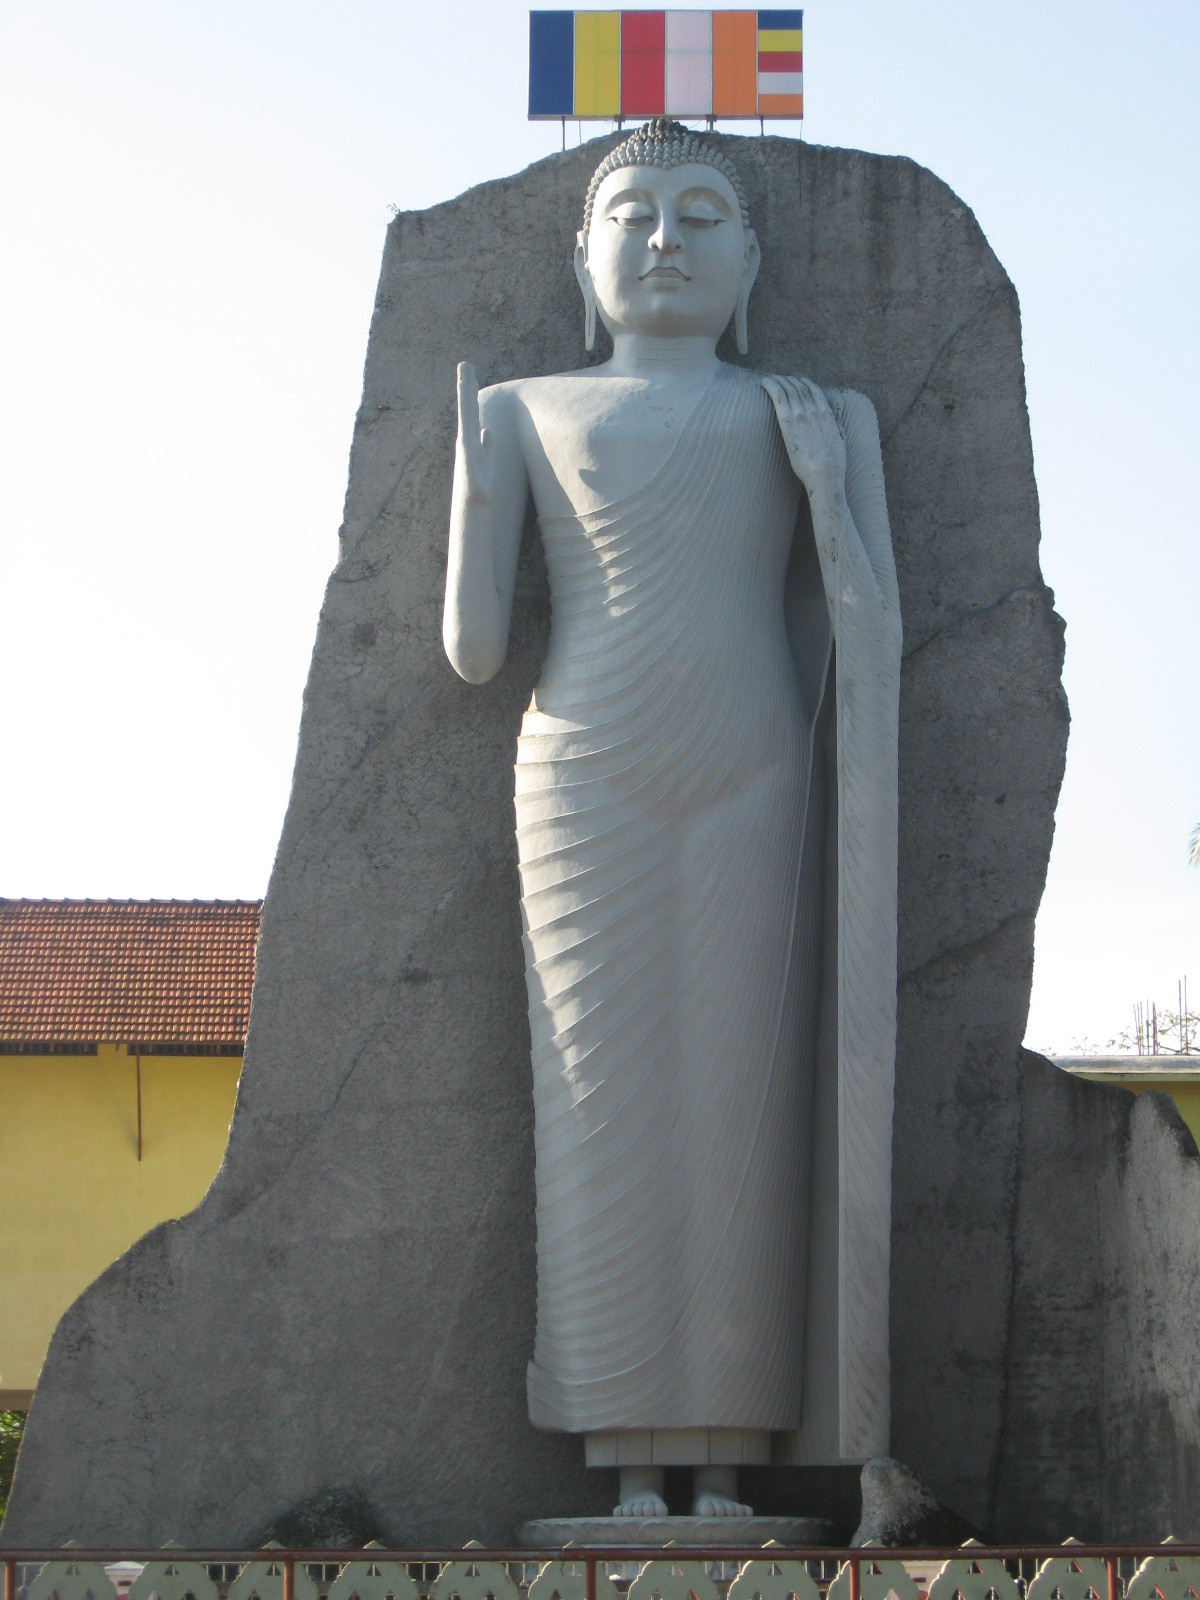 Big Budda (Dondra, Sri Lanka)